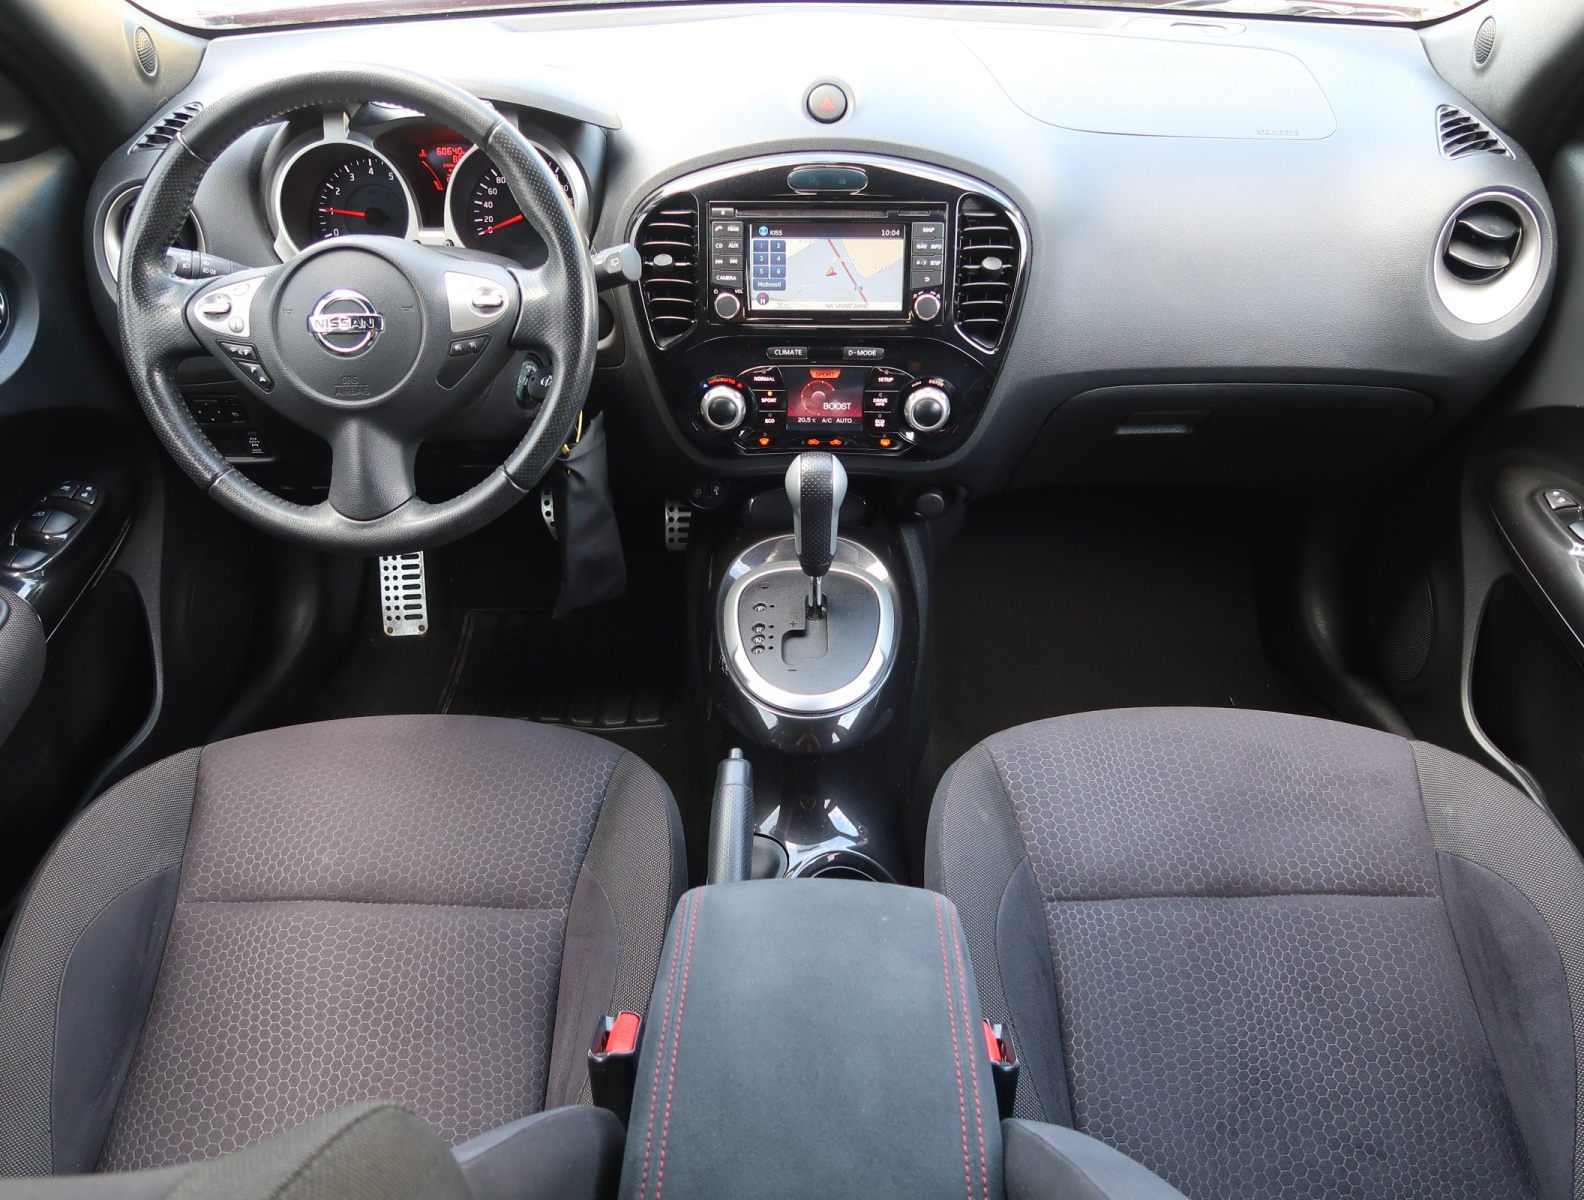 Nissan Juke, 2014, 1.6 DIG-T, 140kW, 4x4